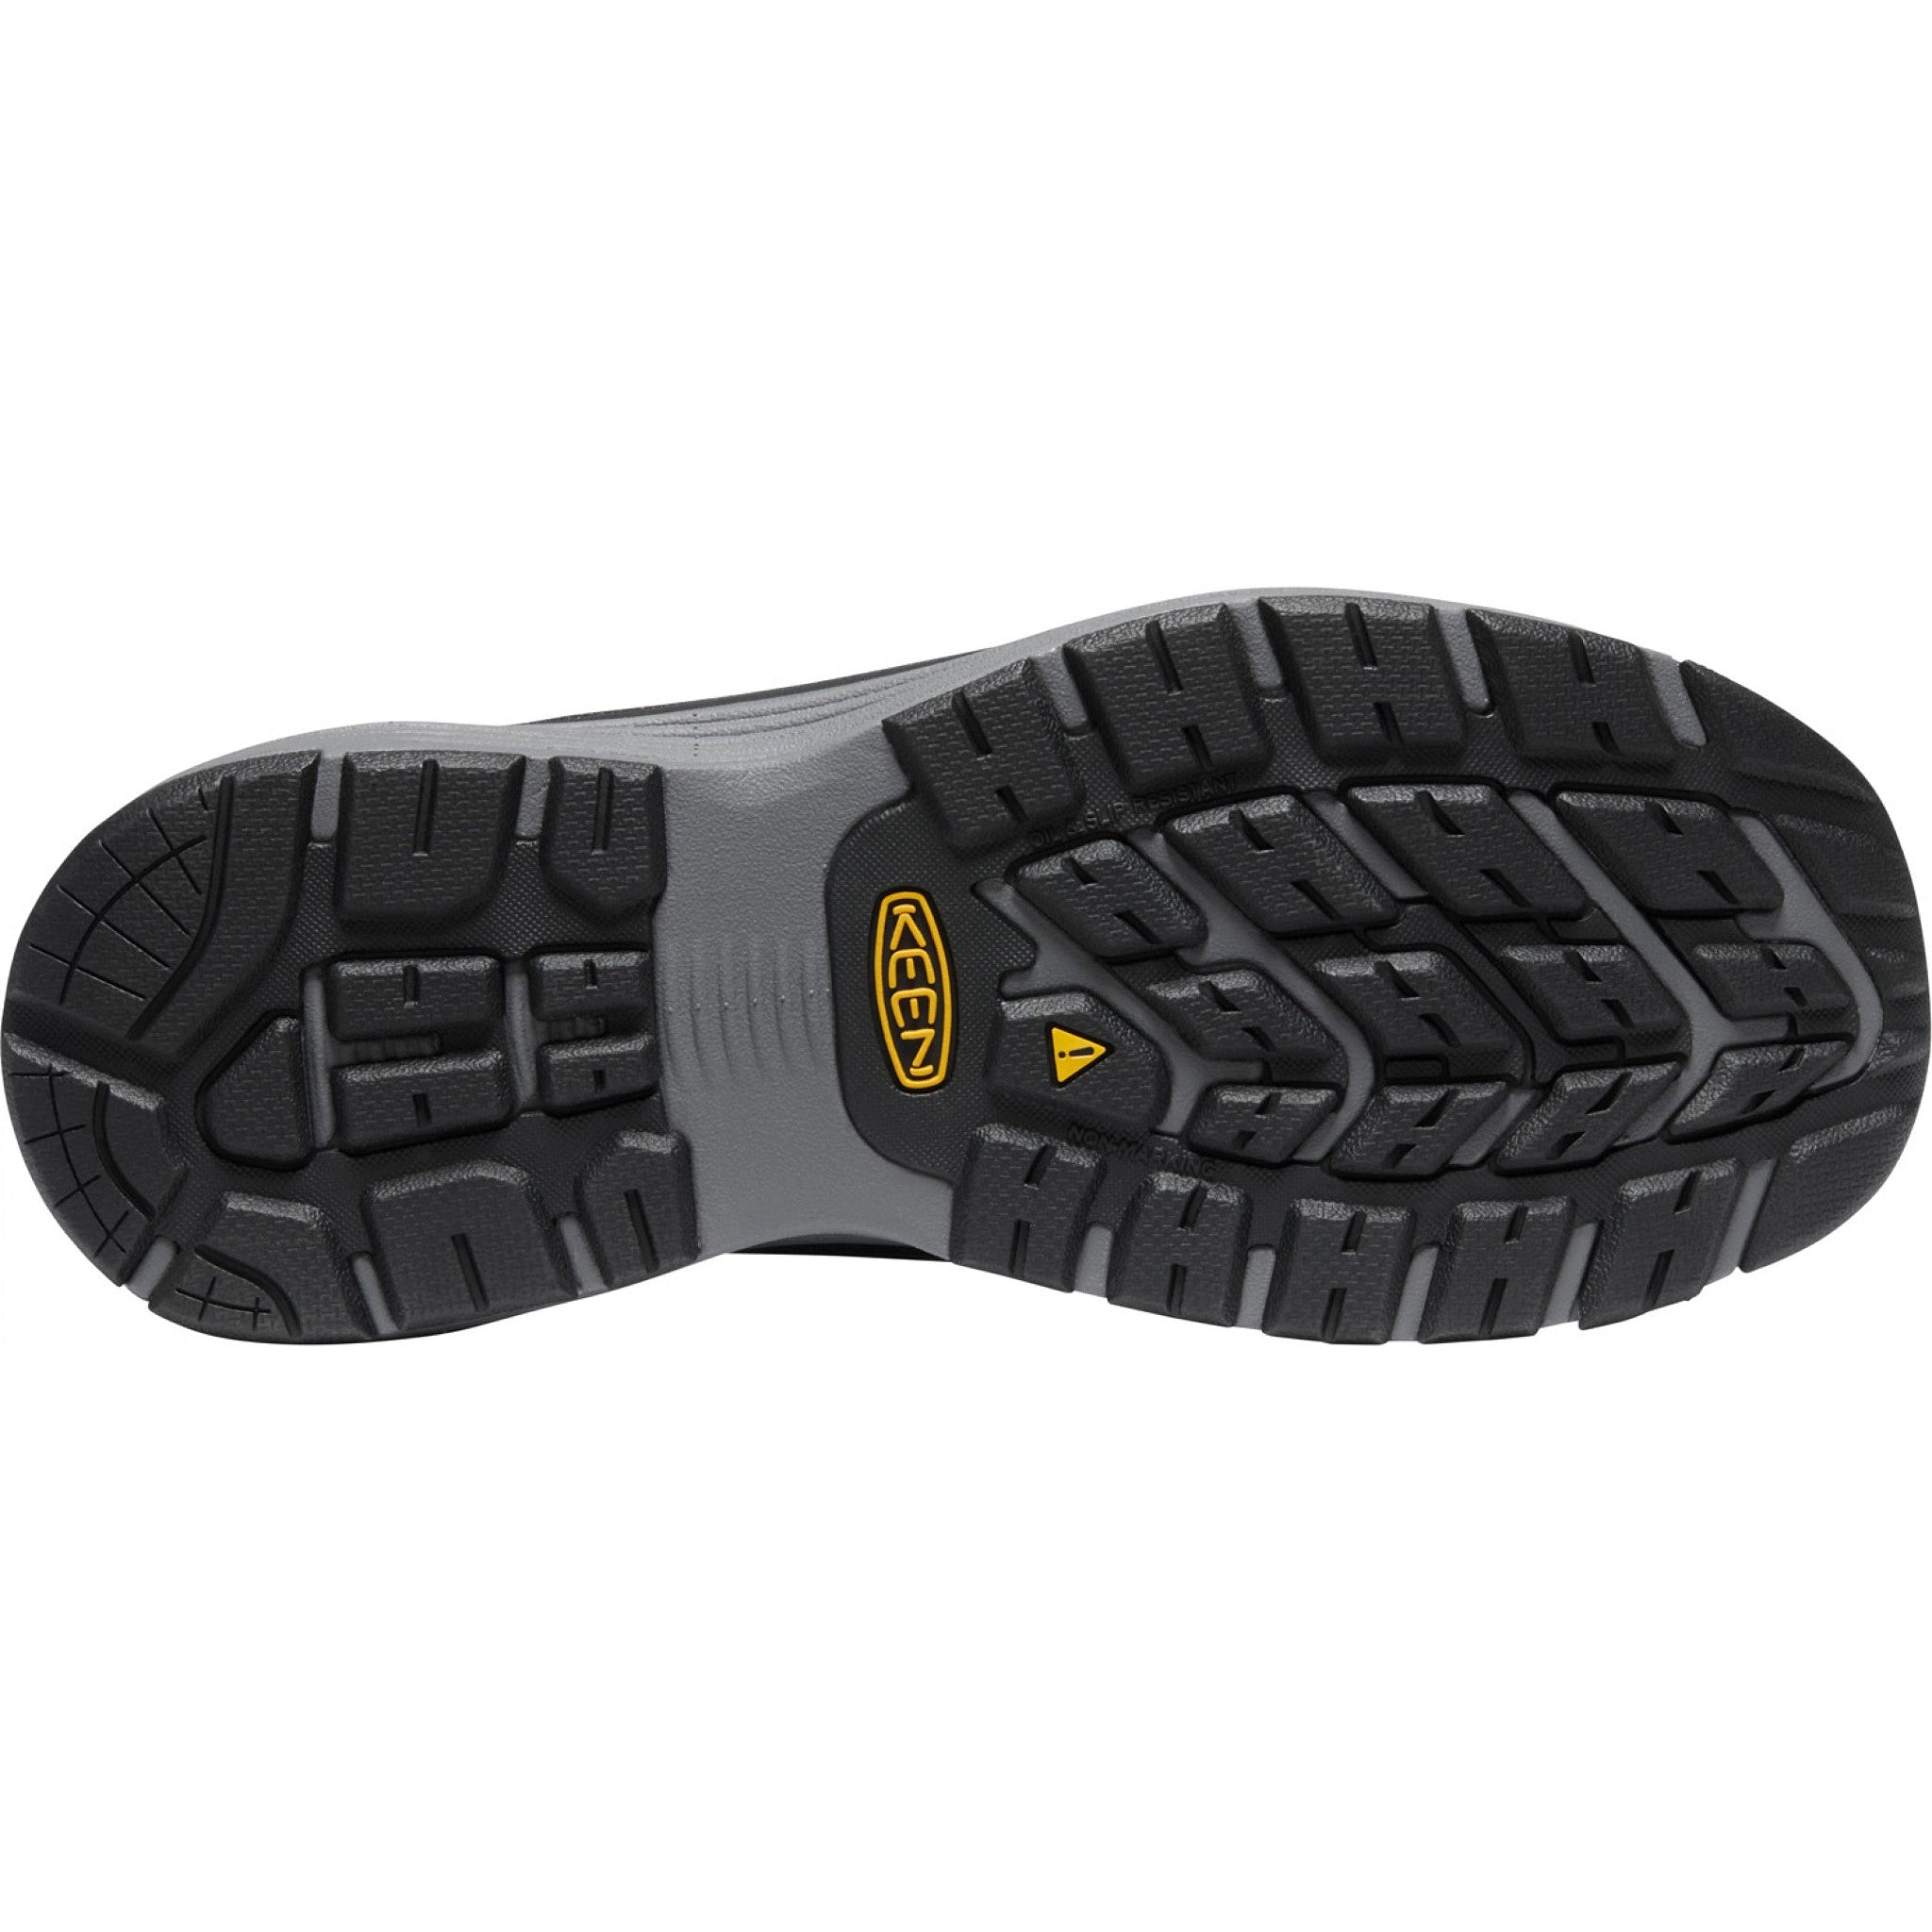 Keen Utility Men's Sparta II ESD Alum Toe Work Shoe - Black - 1025637  - Overlook Boots